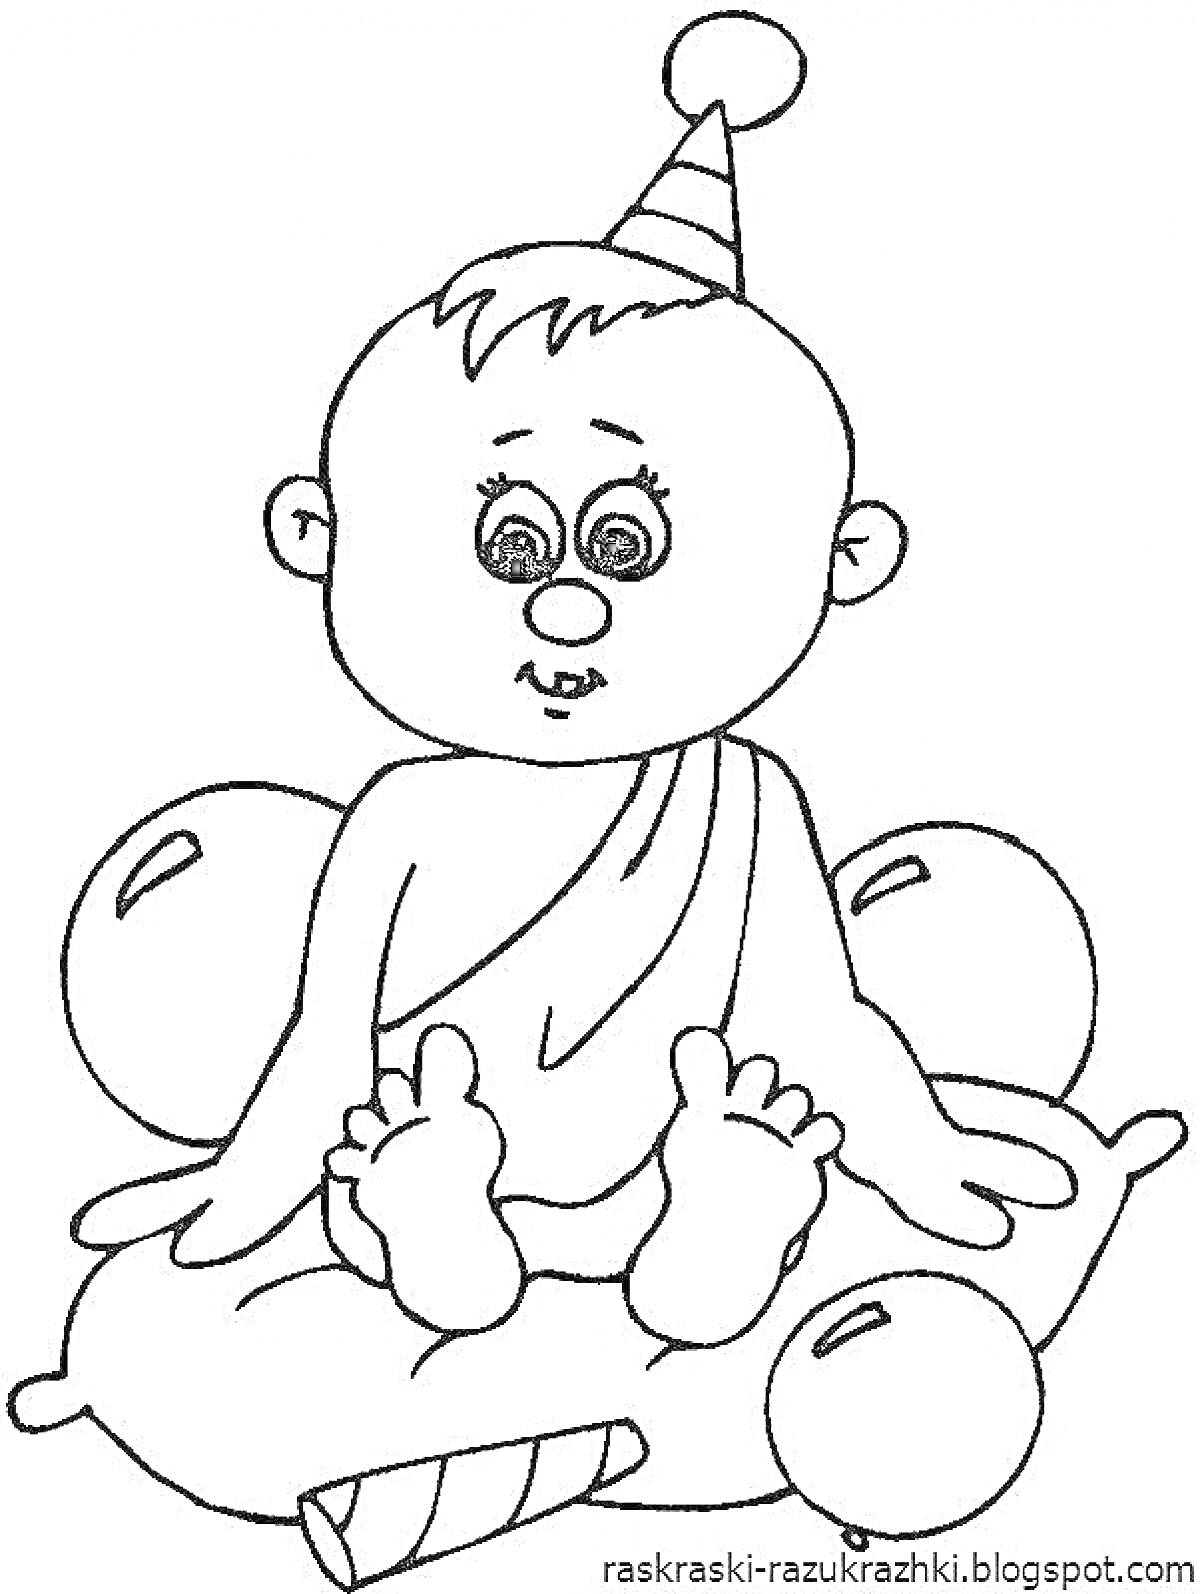 Малыш в колпачке, сидящий на подушке и окруженный воздушными шарами